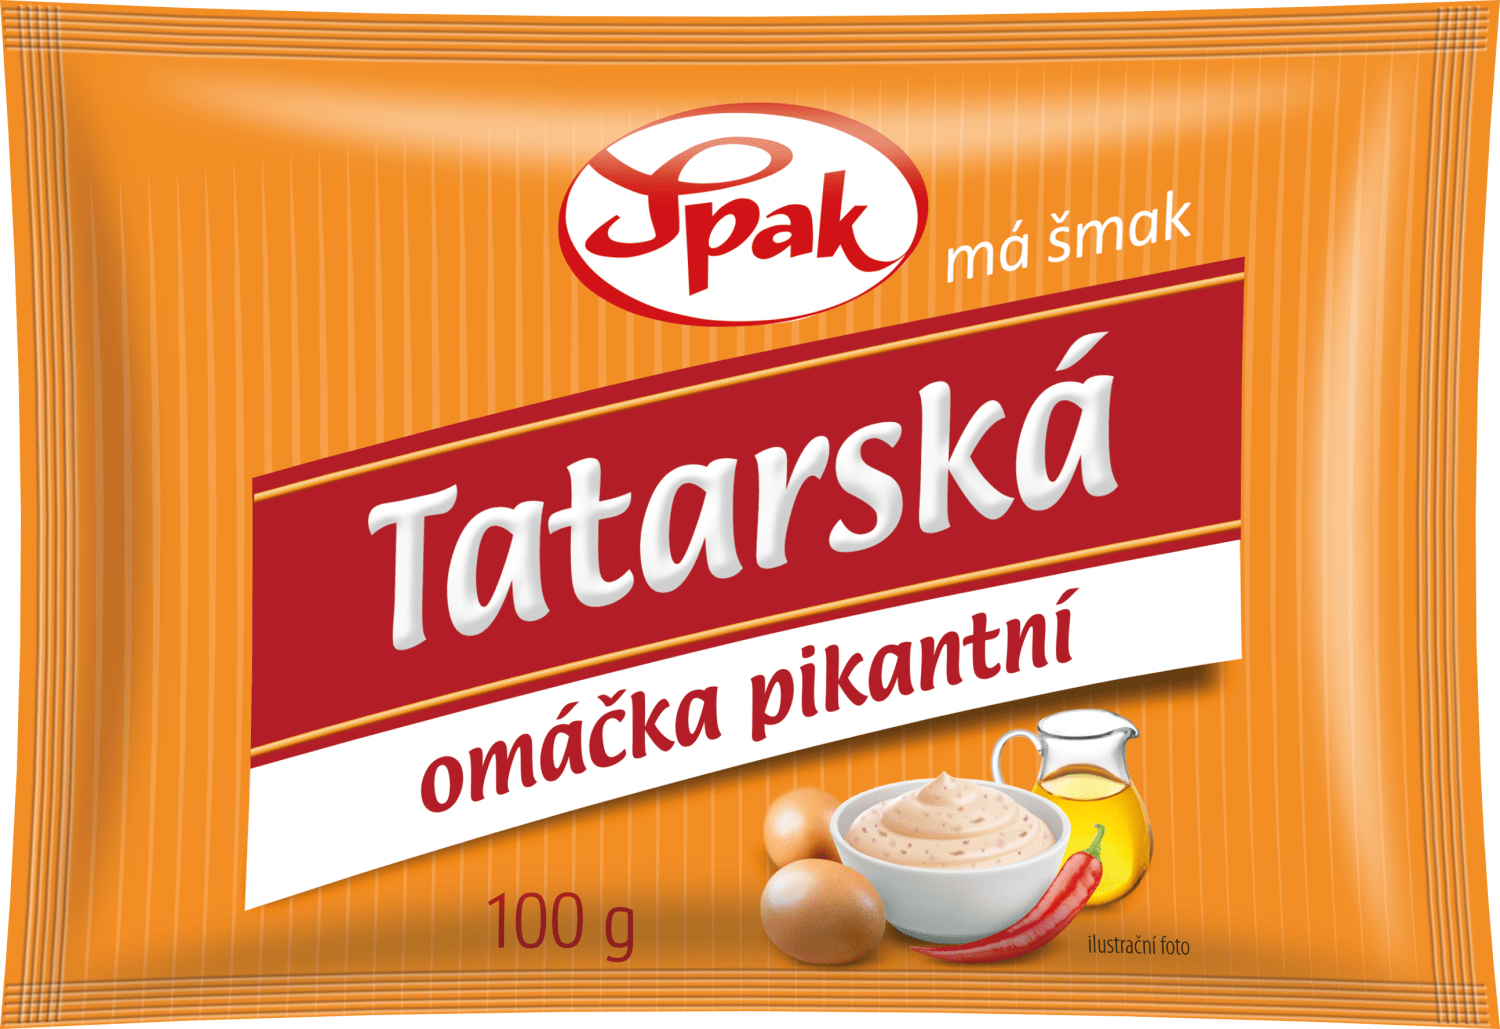 Tatarska-omacka-pikantni-SPAK-100ml-20211111